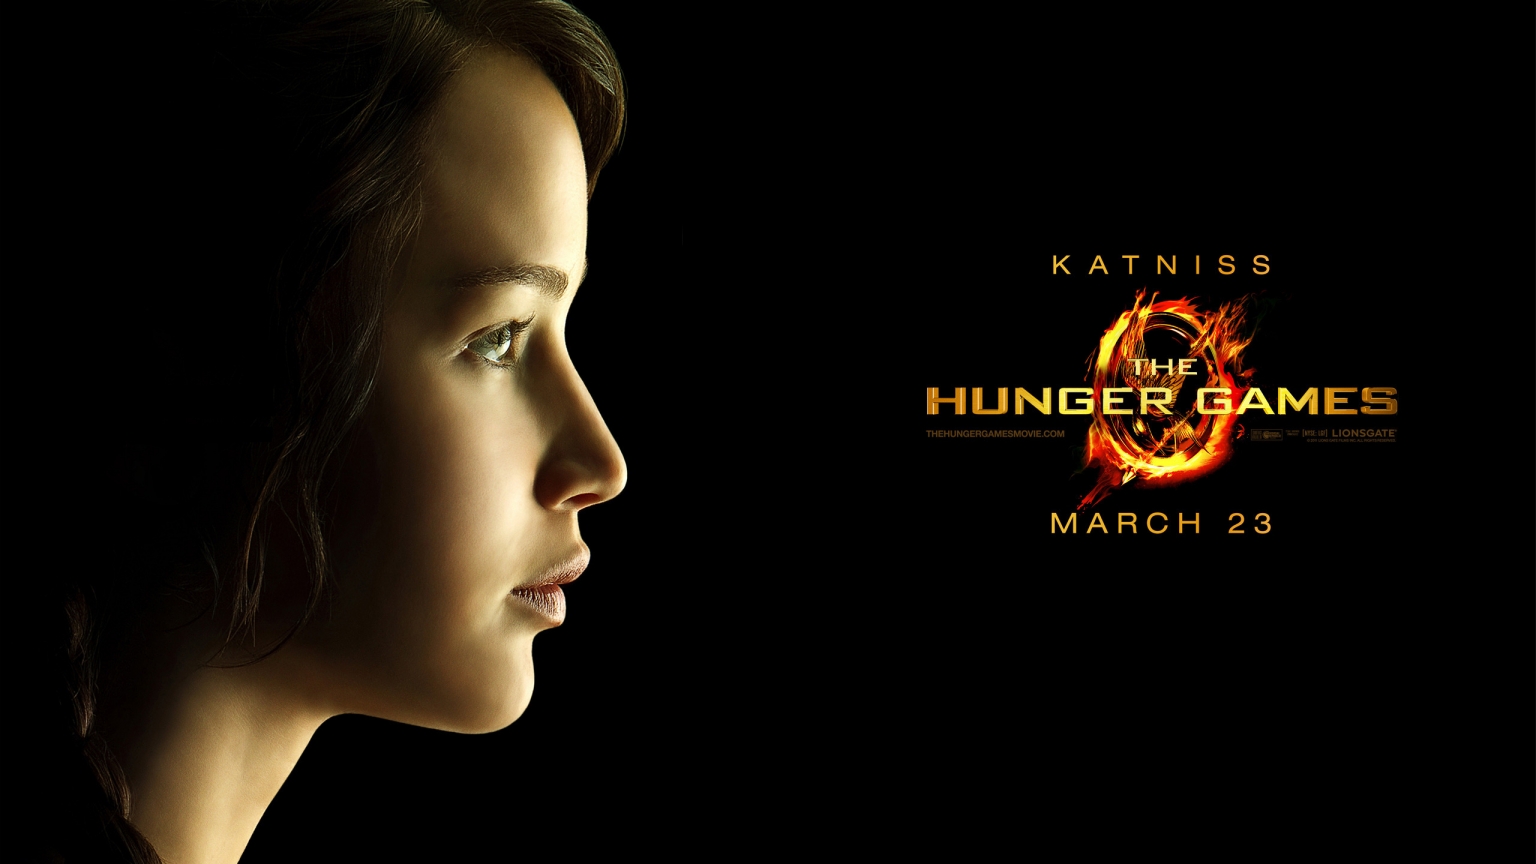 The Hunger Games Katniss for 1536 x 864 HDTV resolution